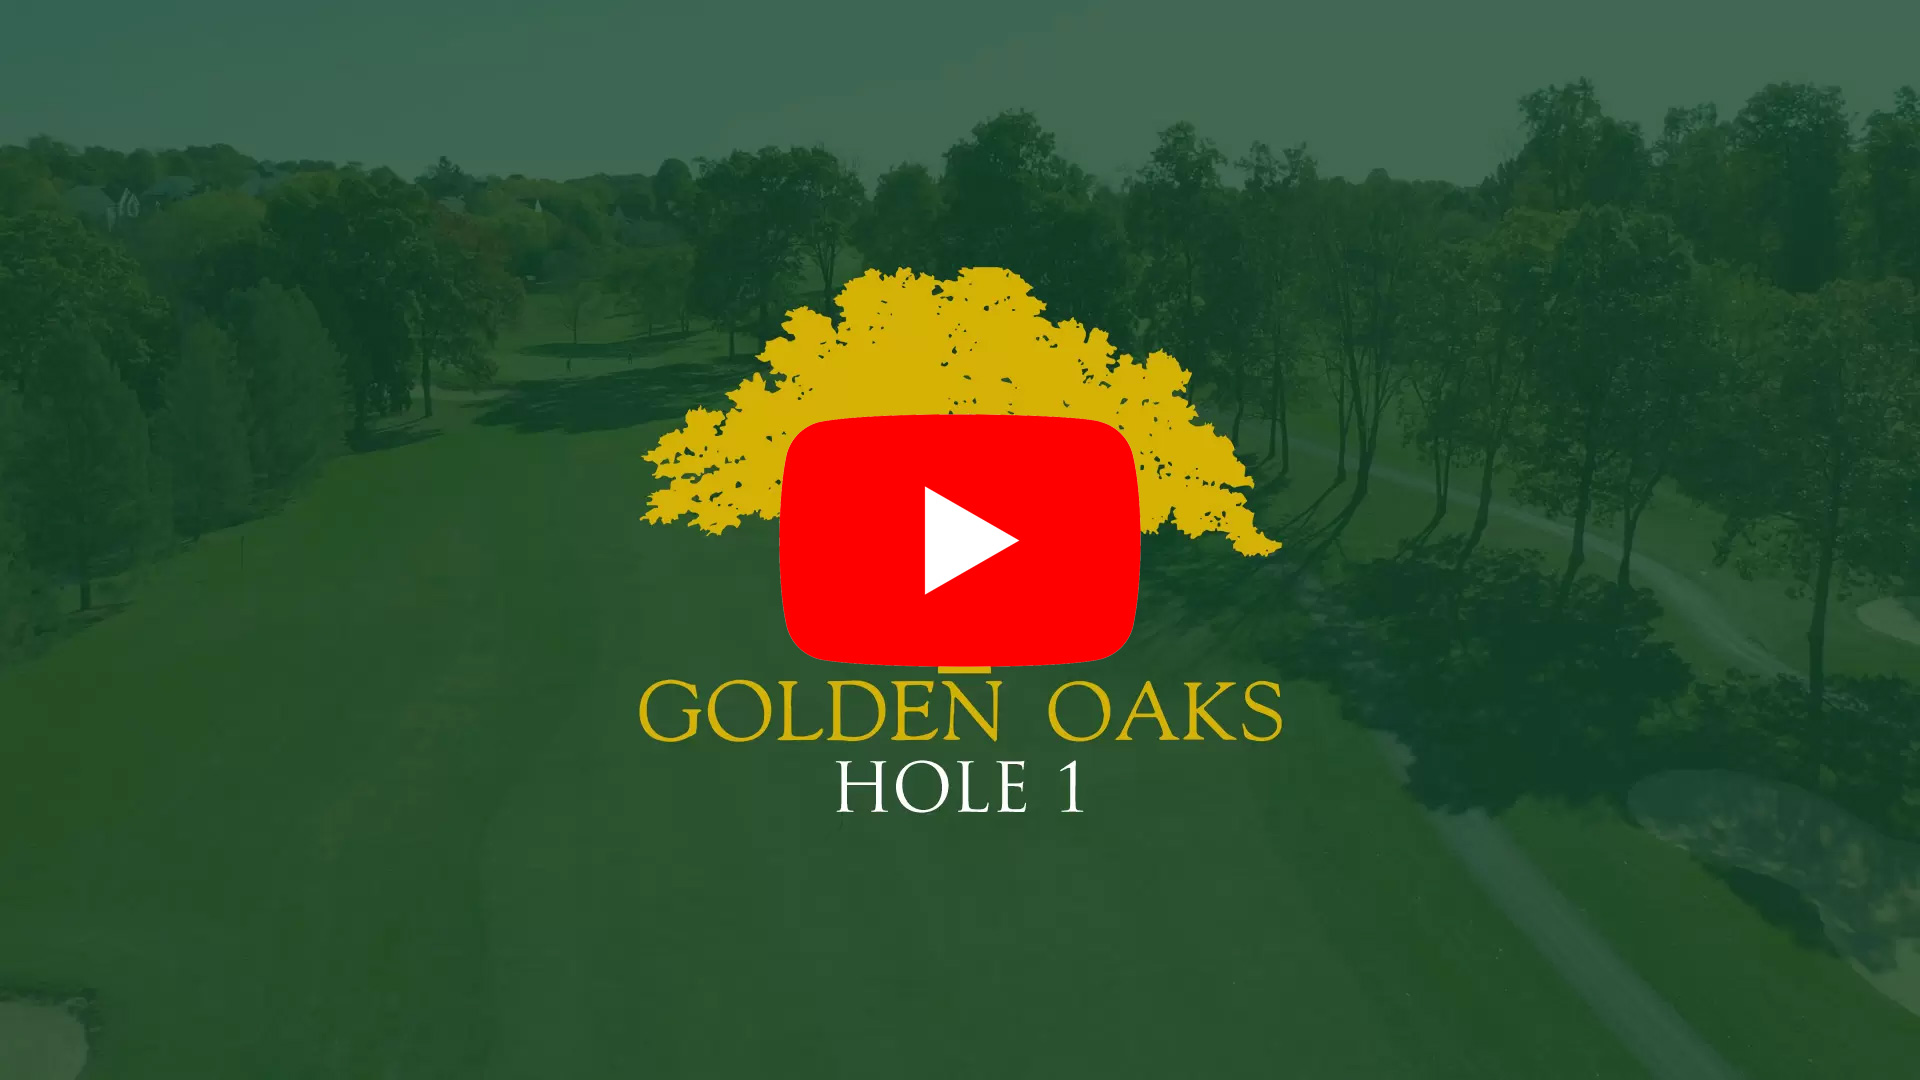 Hole 1 | Golden Oaks Golf Club